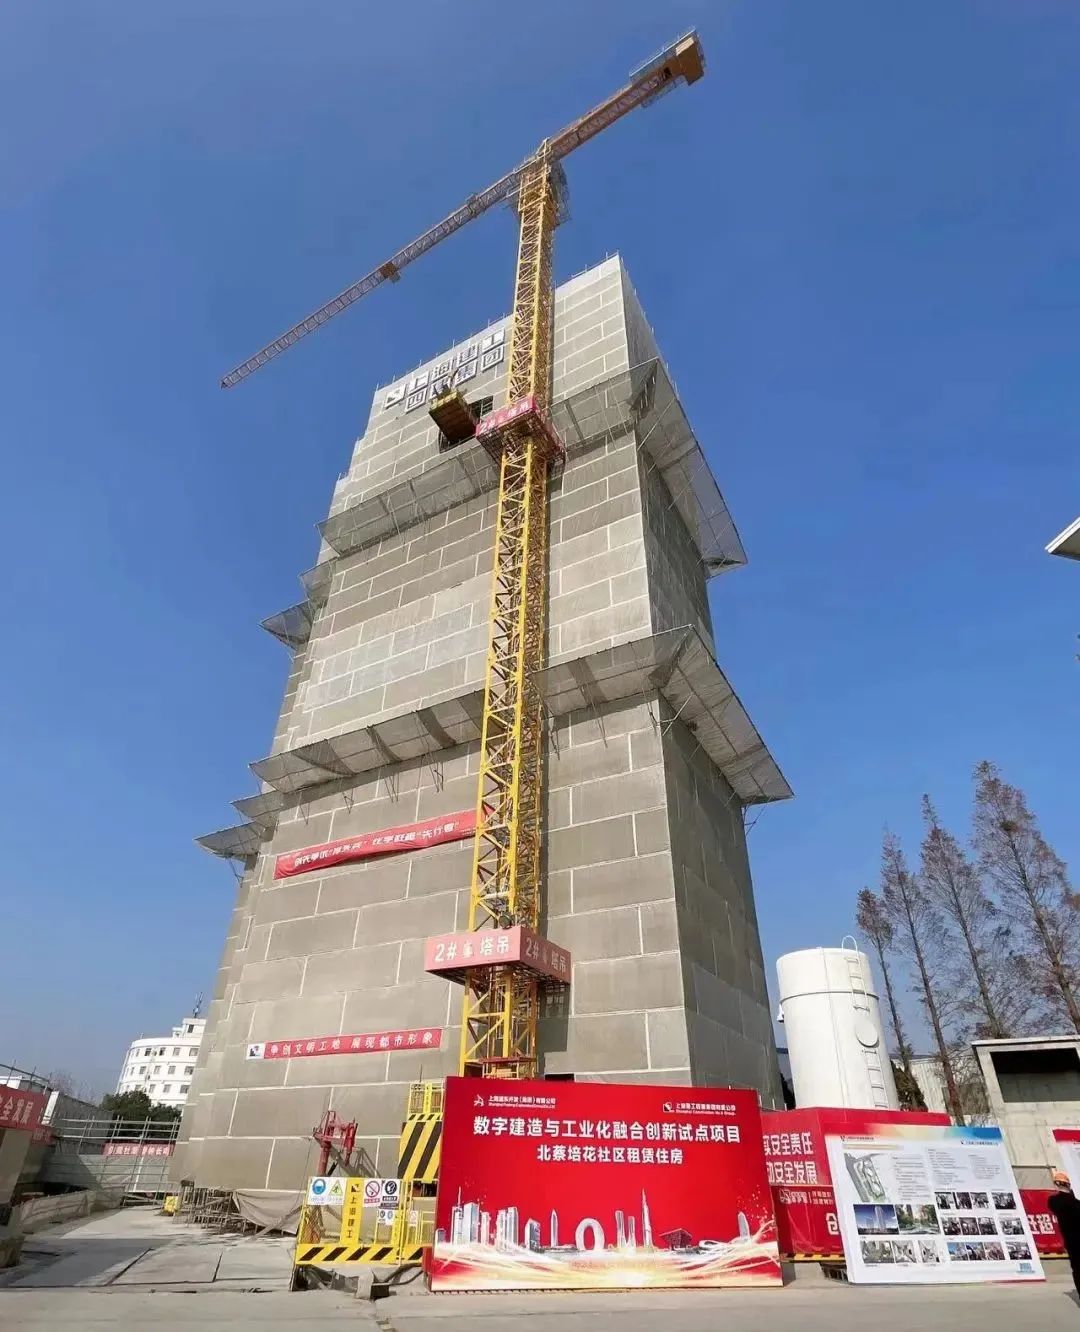 聚焦一线｜BIC前往上海建工四建“数字建造与工业化融合创新试点项目”观摩学习